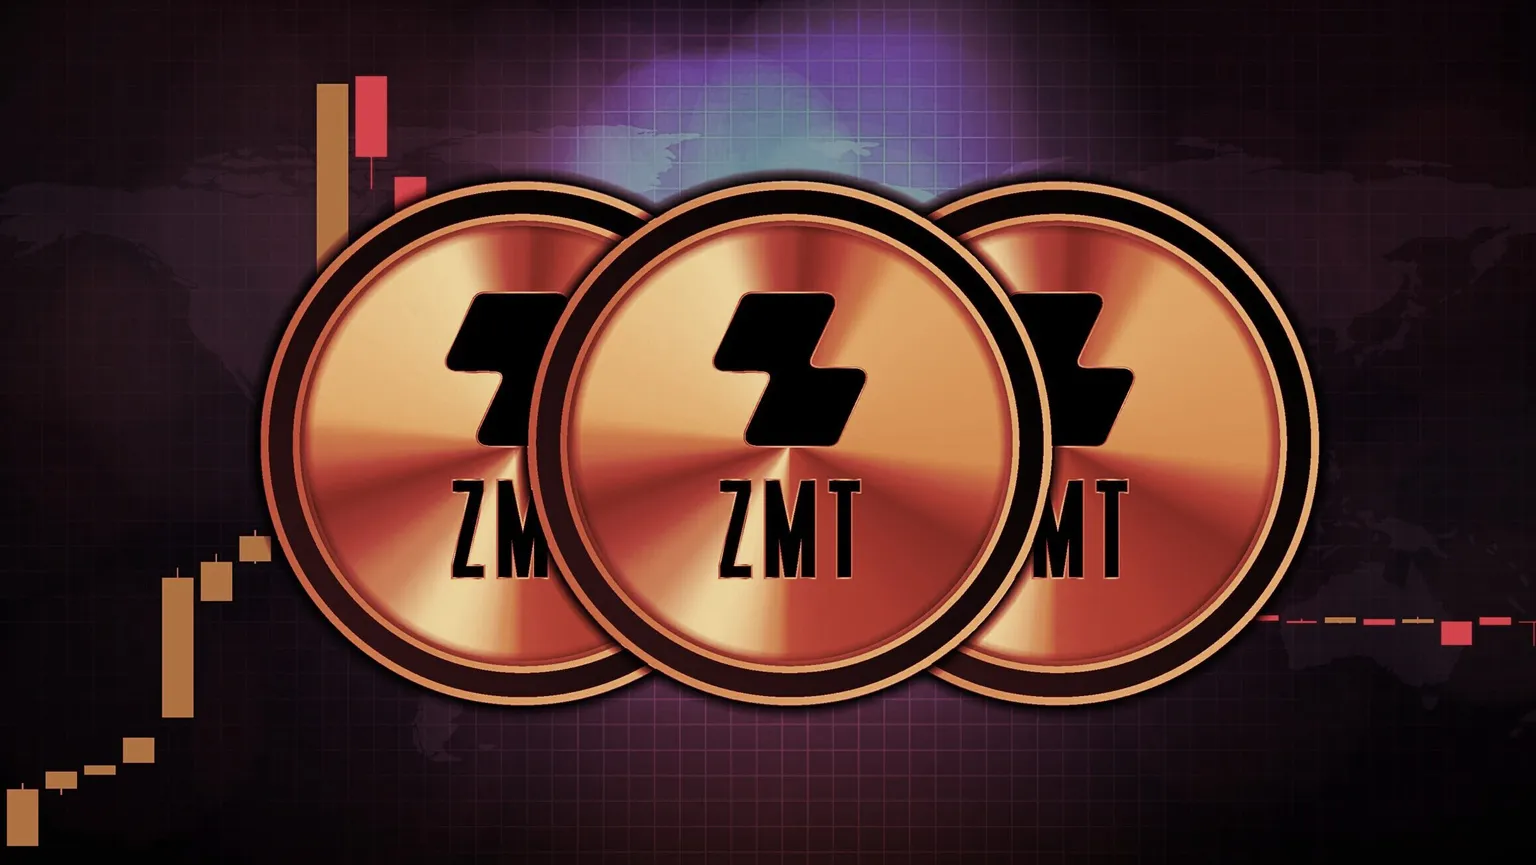 Zipmex's ZMT token. Image: Shutterstock